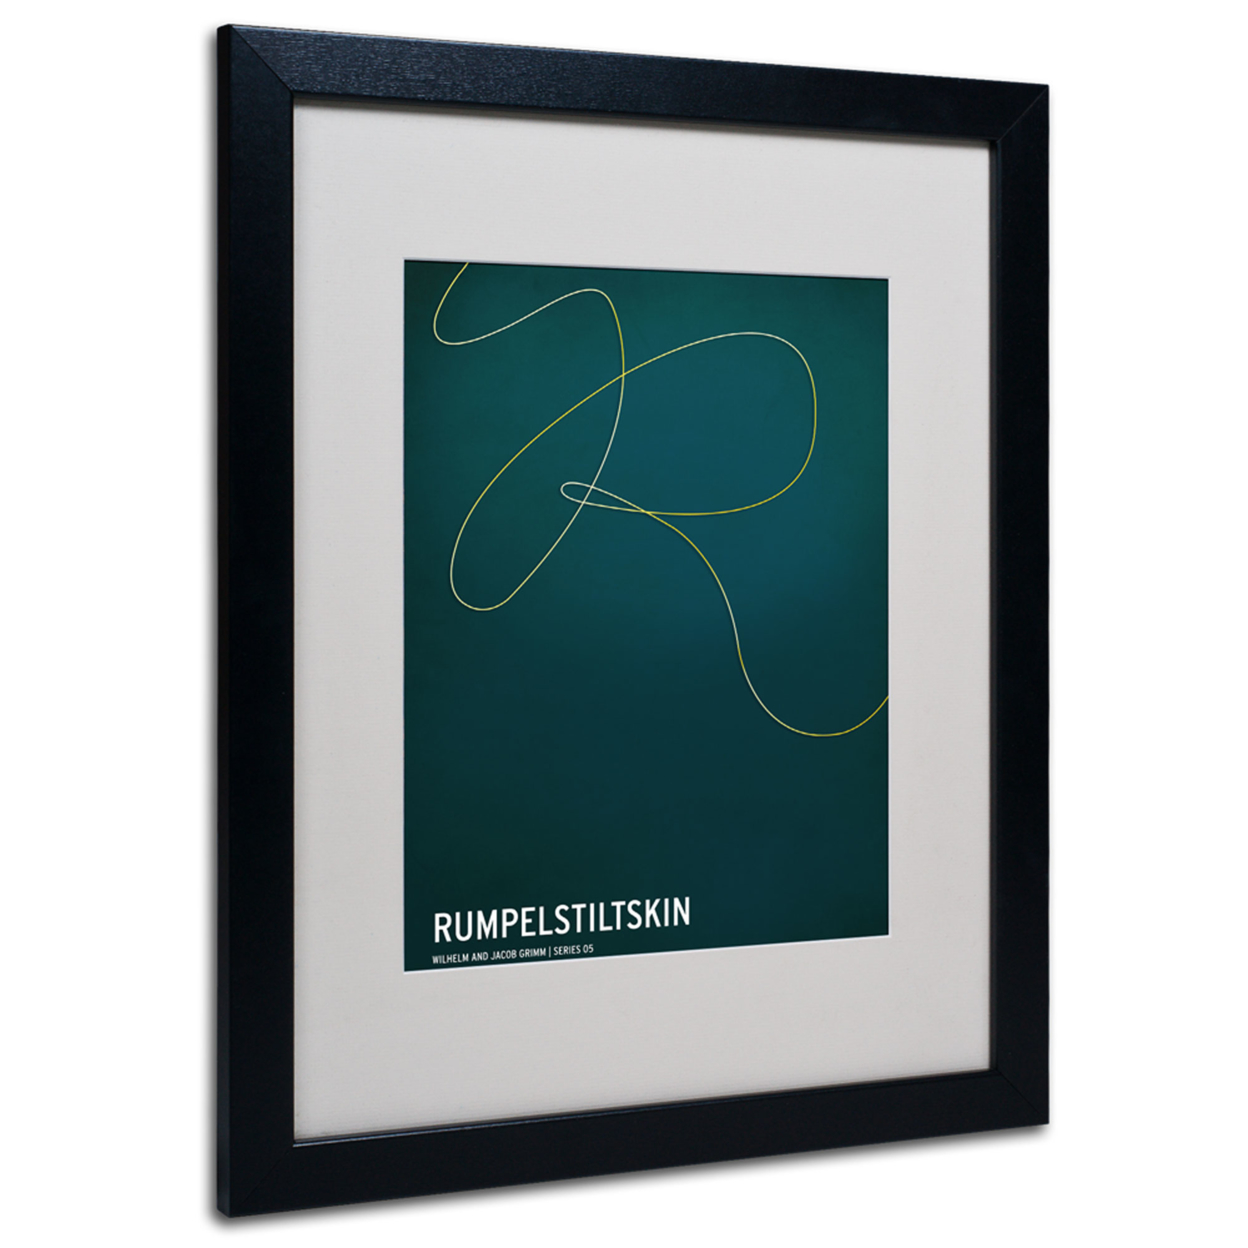 Christian Jackson 'Rumpelstiltskin' Black Wooden Framed Art 18 X 22 Inches